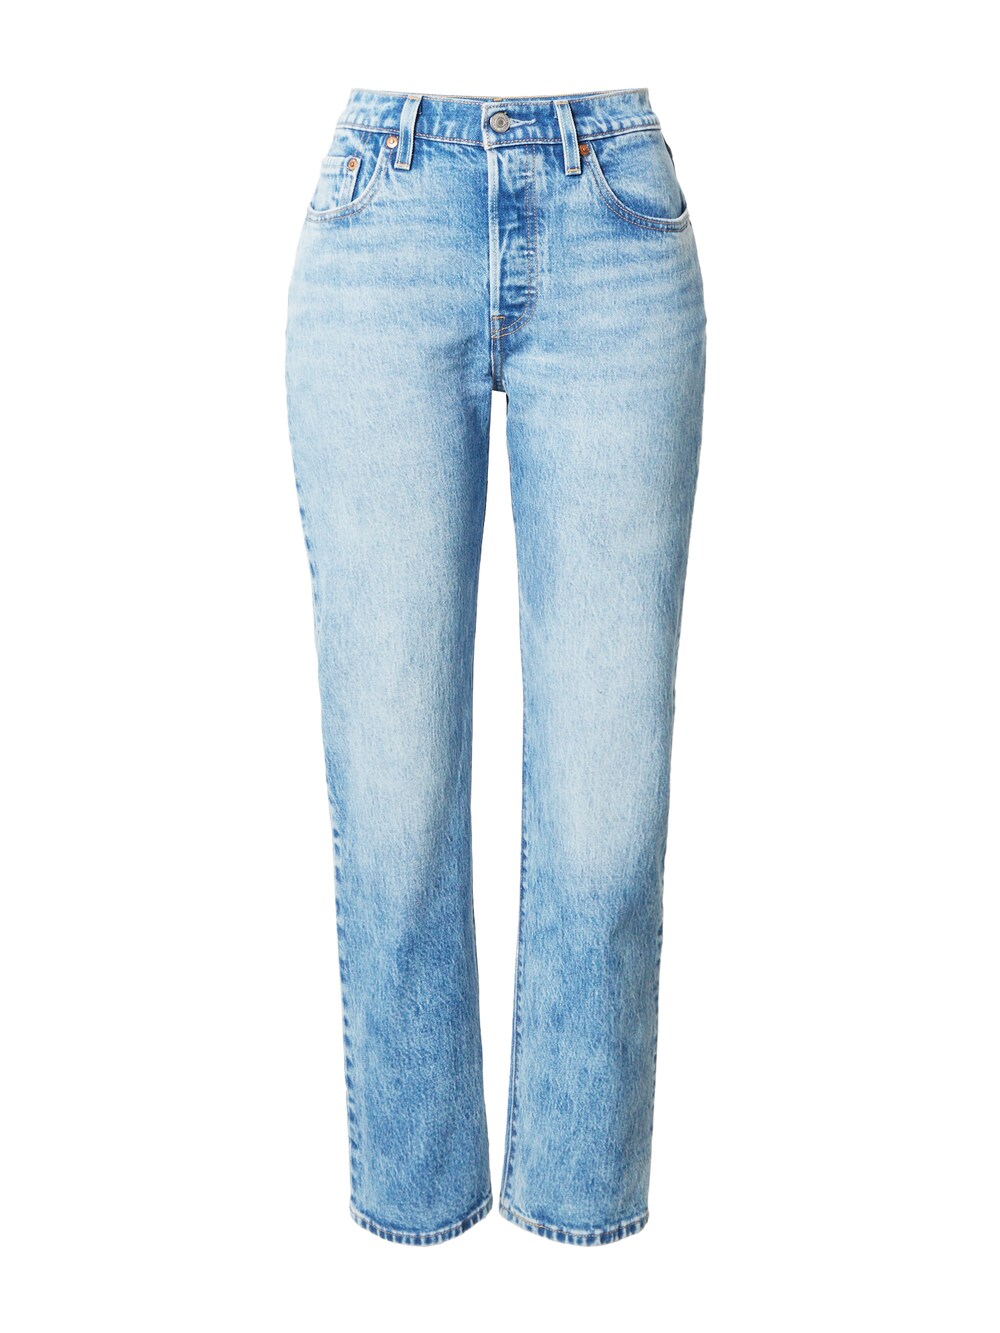 Зауженные джинсы LEVIS 501, светло-синий зауженные джинсы ombre светло синий